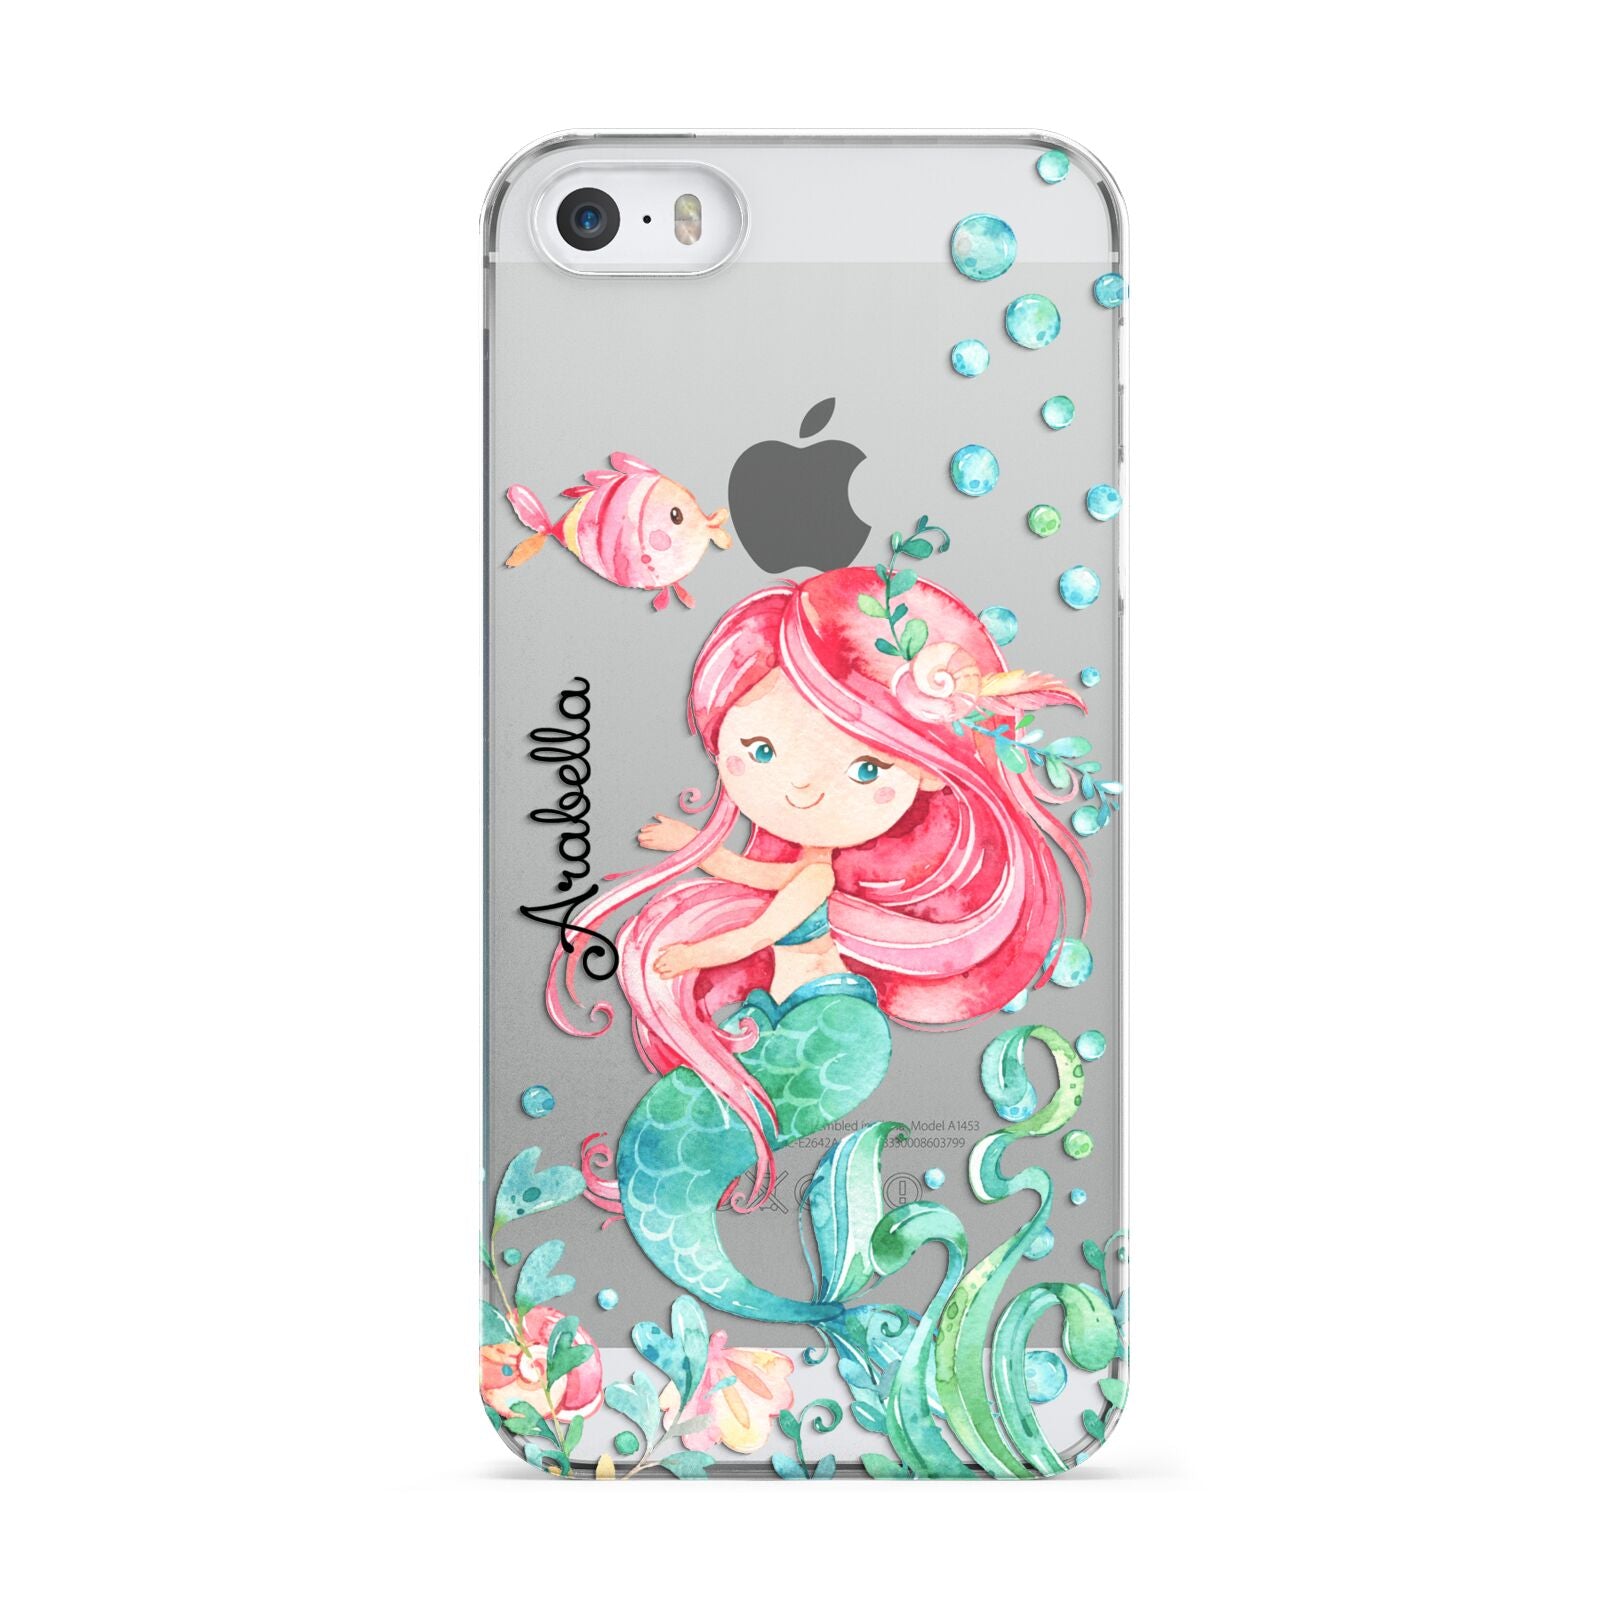 Personalised Mermaid Apple iPhone 5 Case